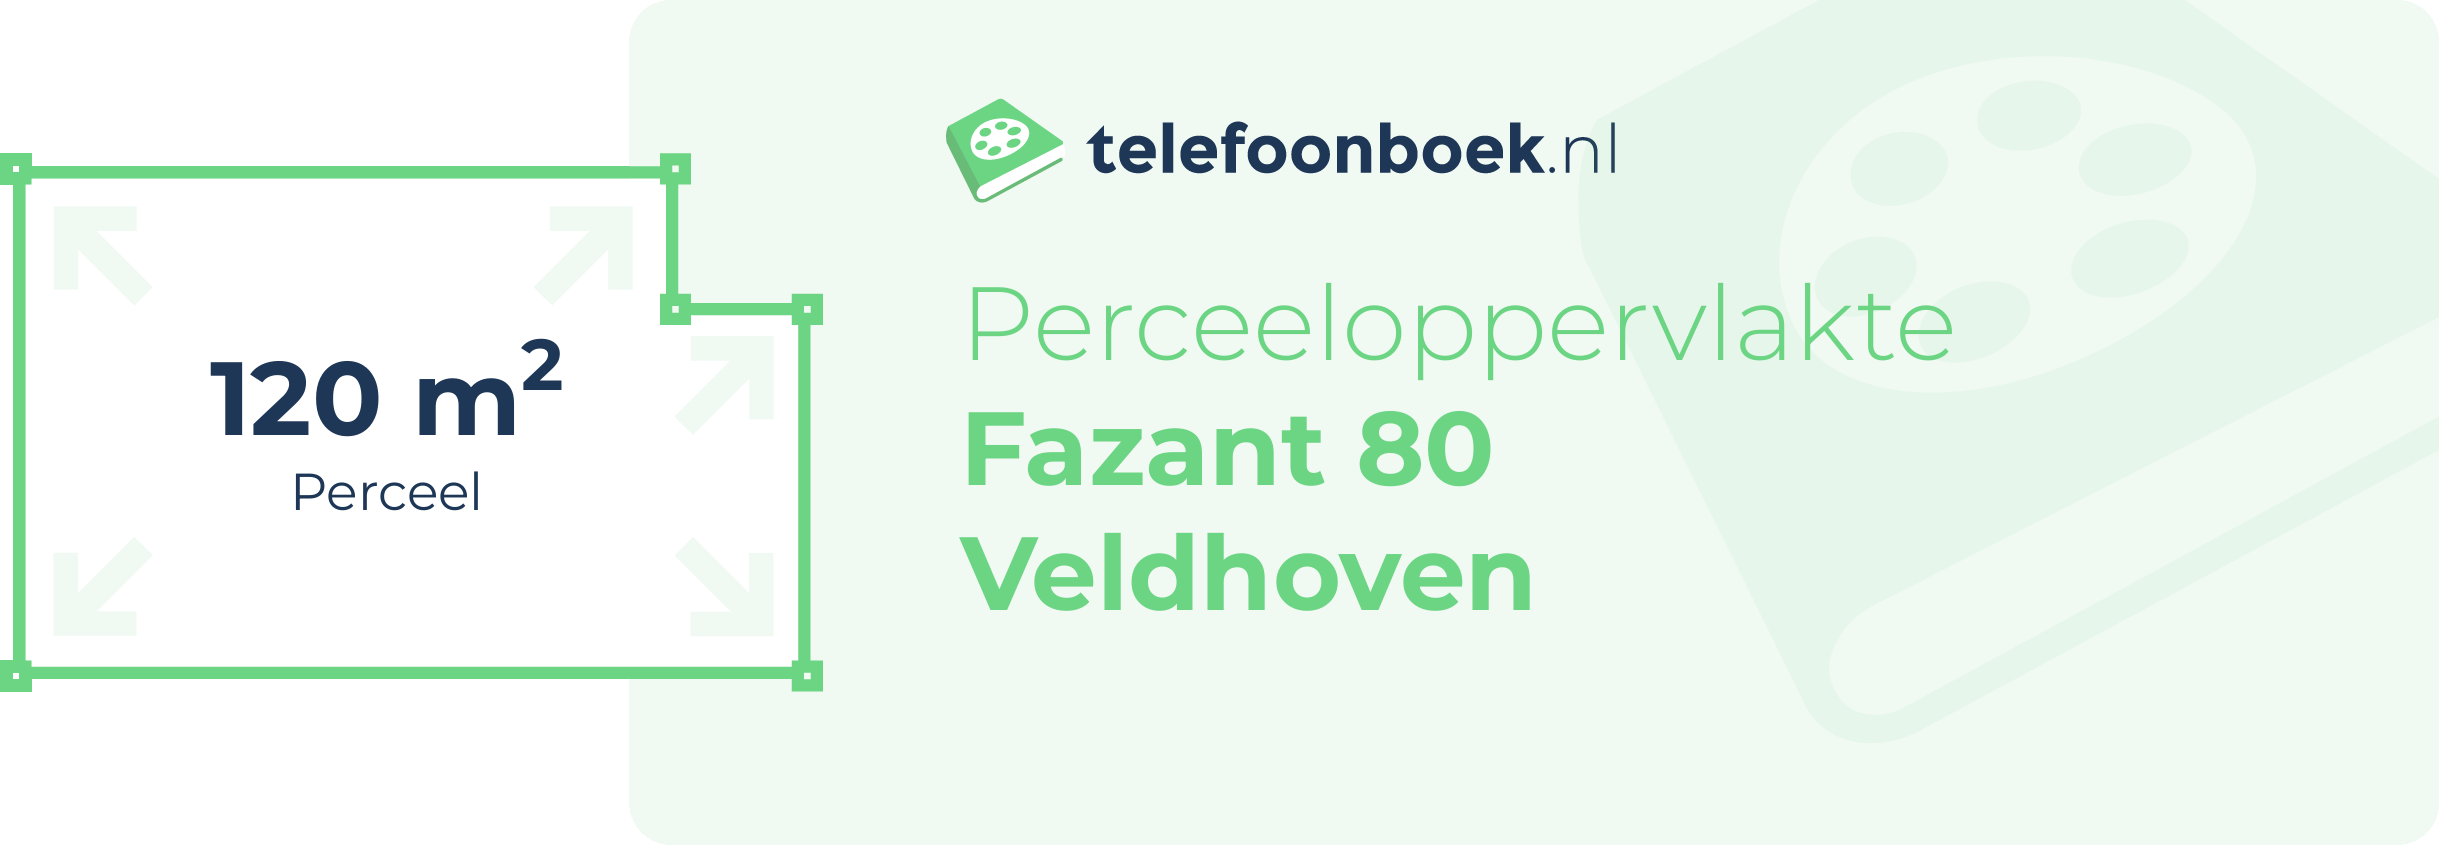 Perceeloppervlakte Fazant 80 Veldhoven